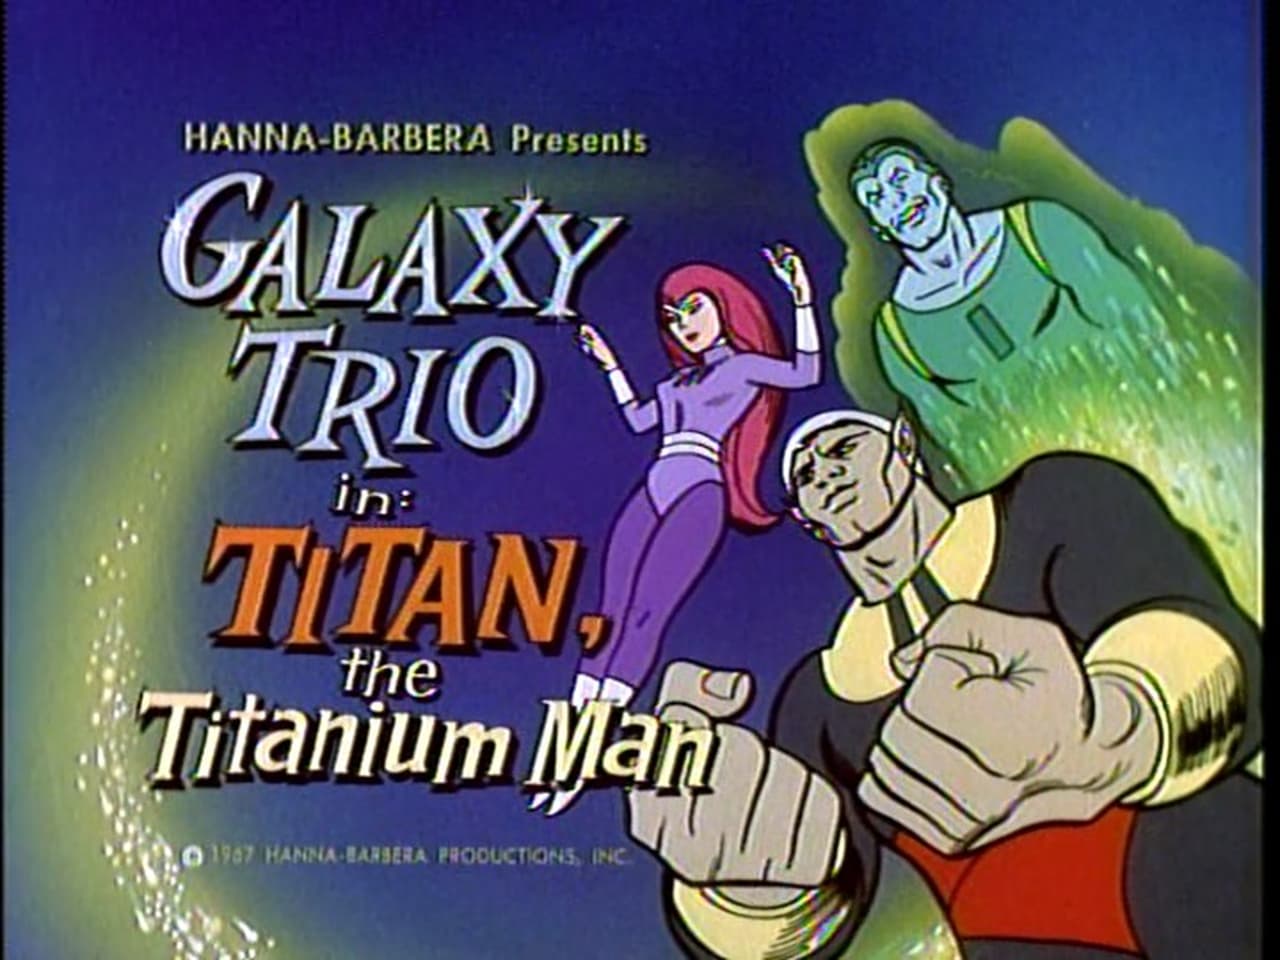 Titan the Titanium Man